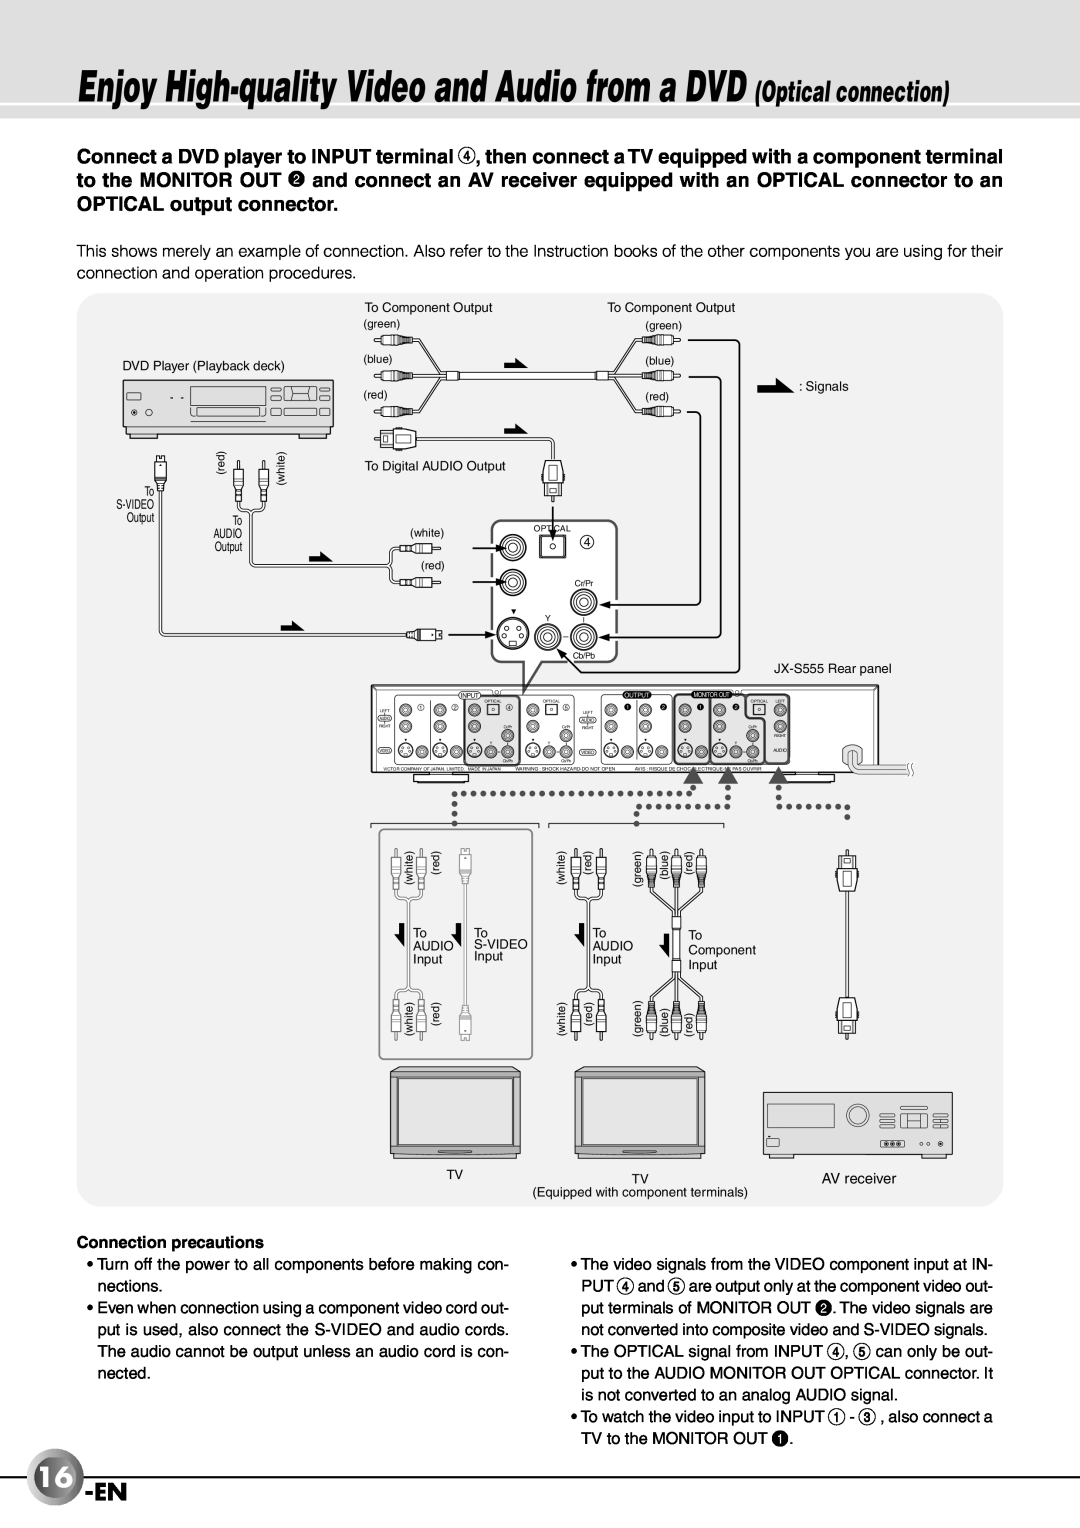 JVC JX-B555 manual 16-EN, OPTICAL output connector, Connection precautions 